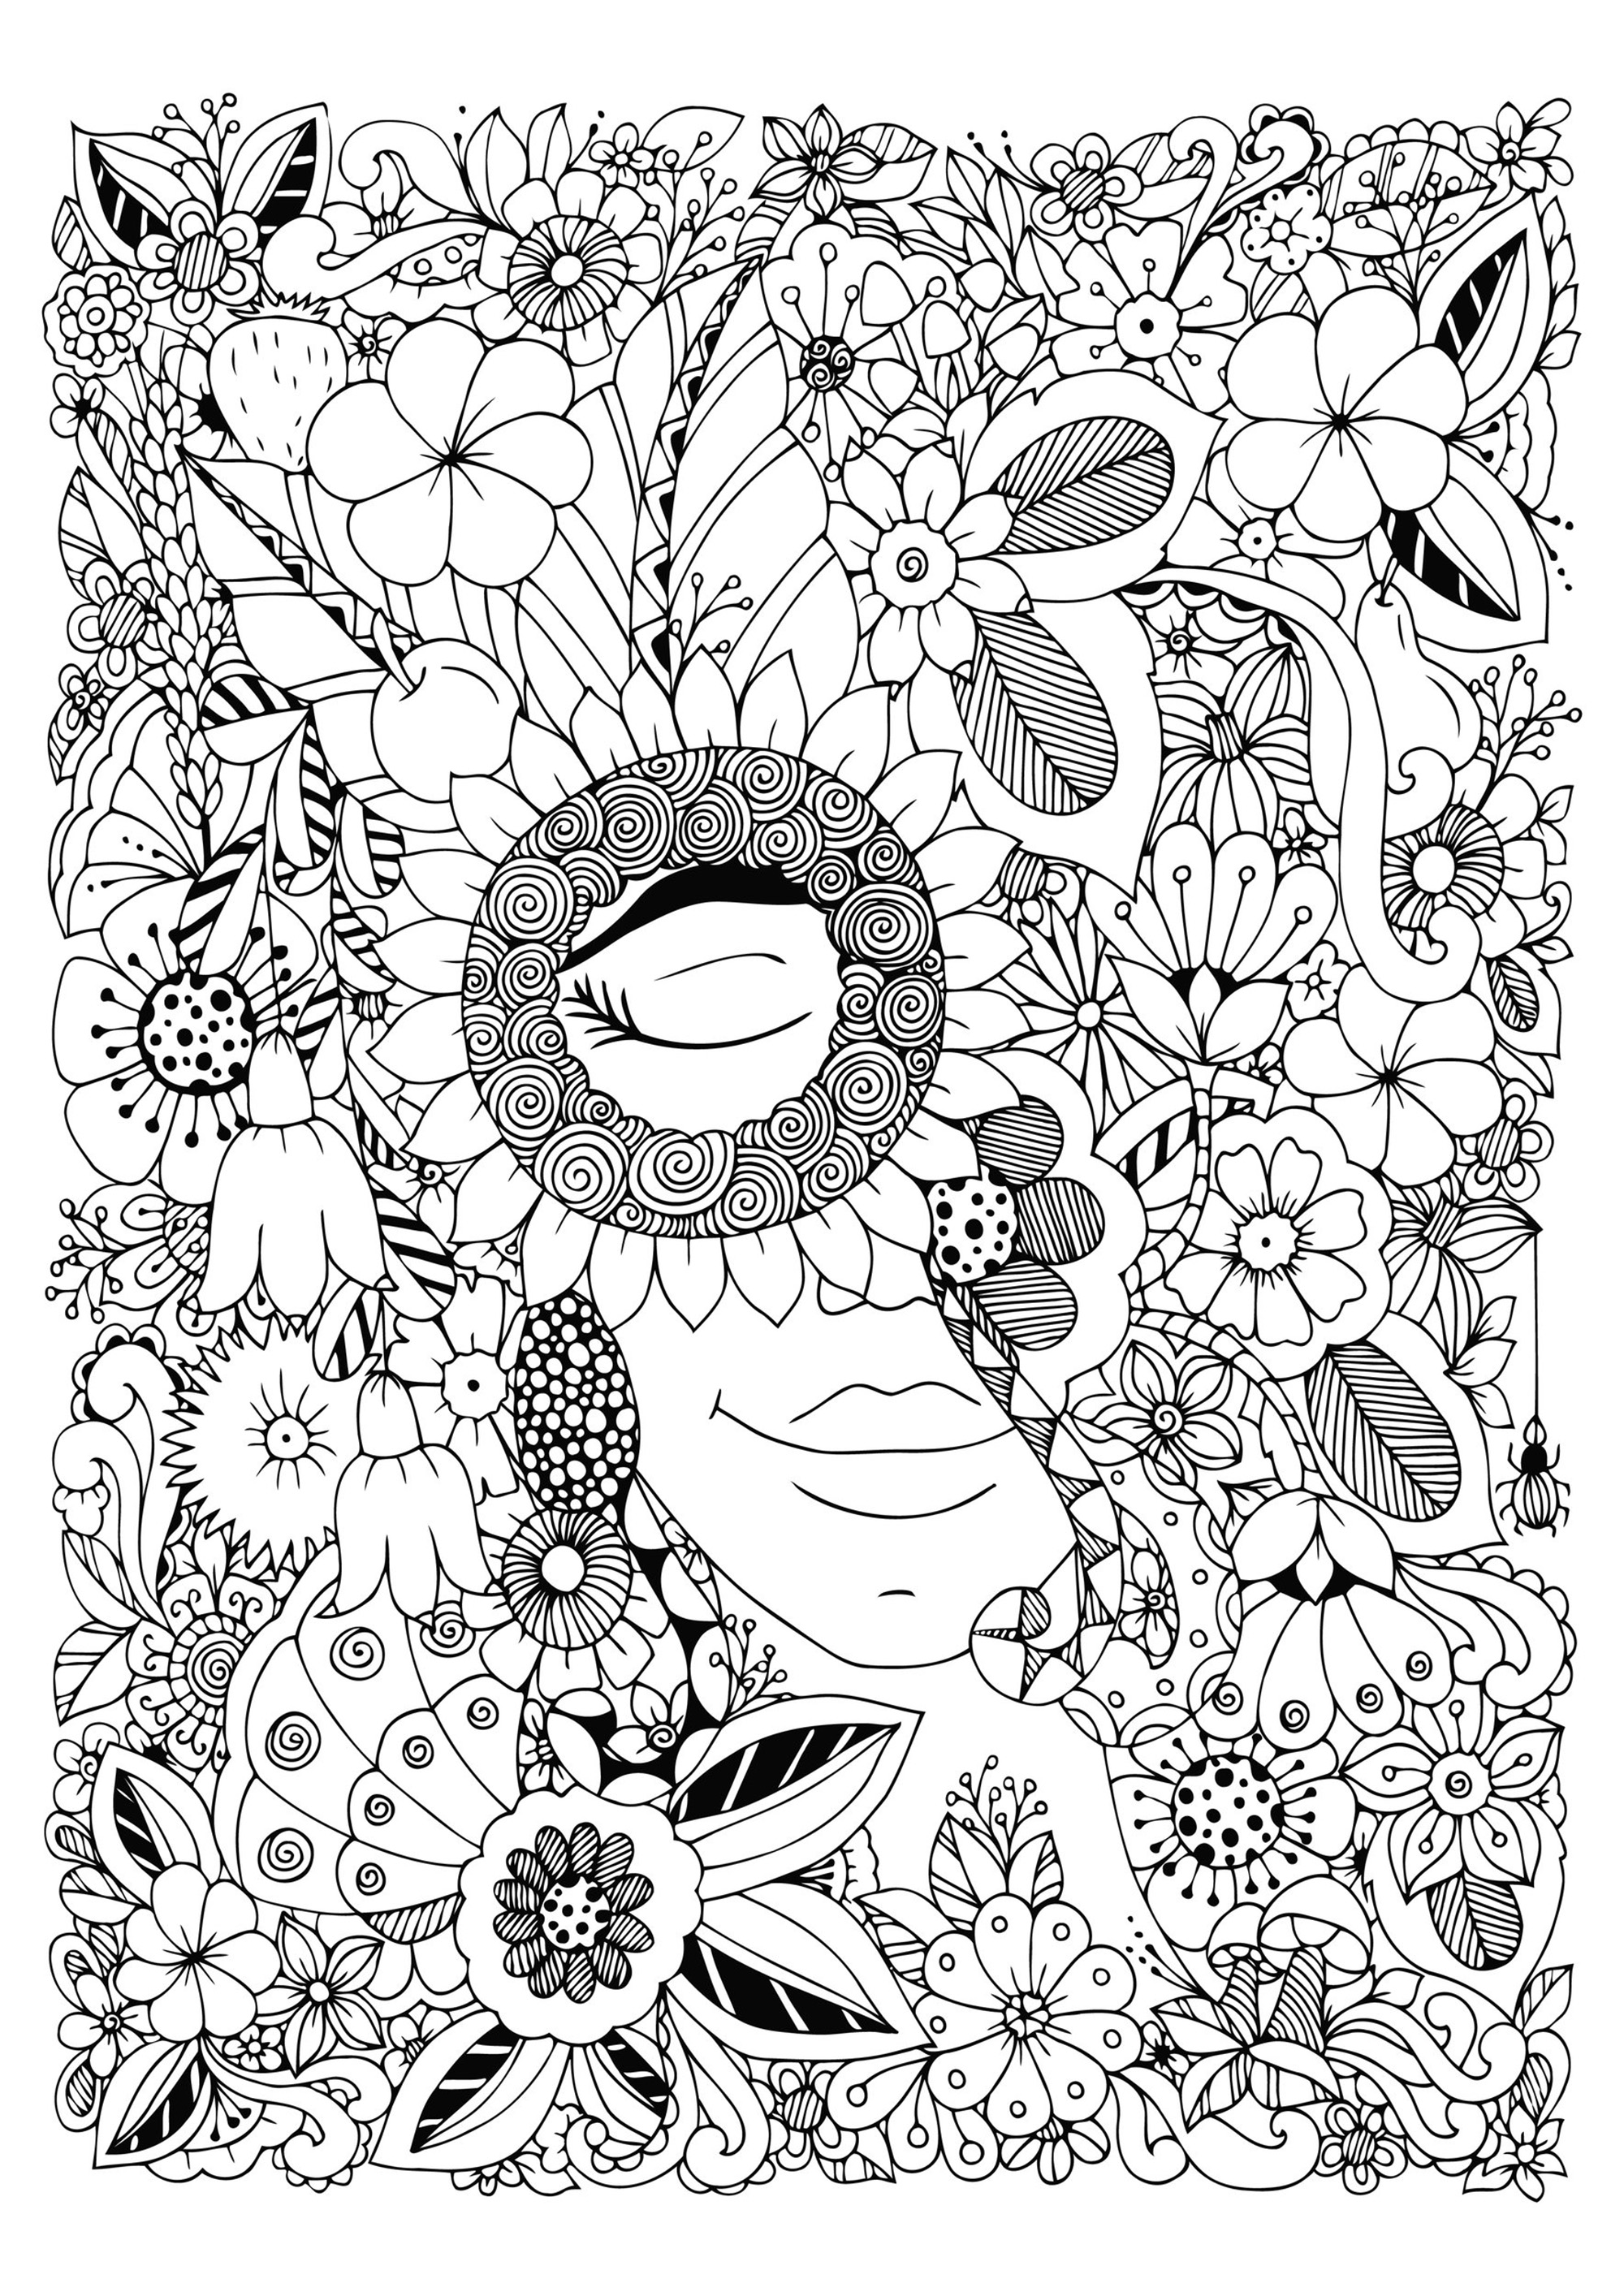 Frau mit geschlossenen Augen, versteckt in der Mitte von sehr vielfältigen hübschen Blumen, Künstler : Tanvetka   Quelle : 123rf